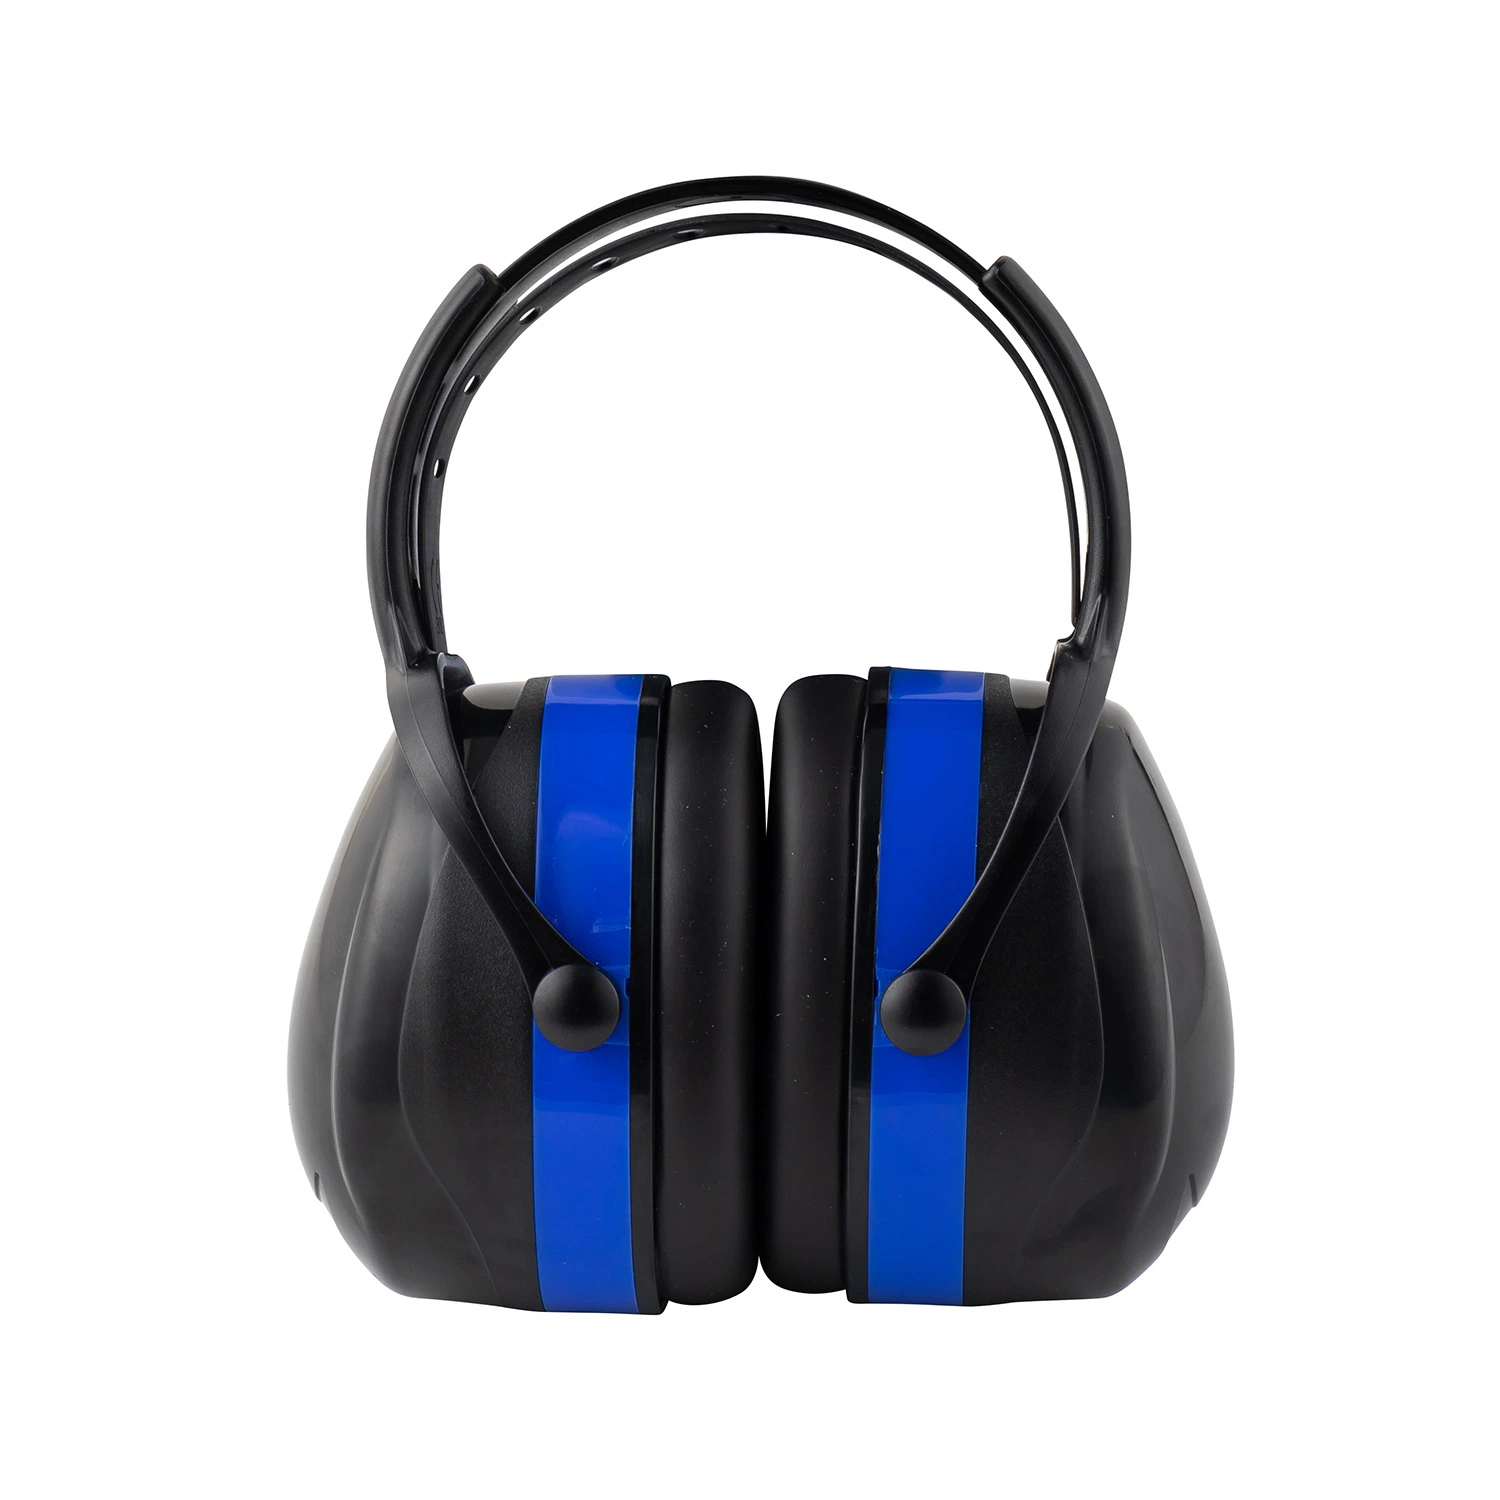 Plegado de las orejeras para protección auditiva - EPI -Earwear- Protector de la Oreja de Seguridad Industrial